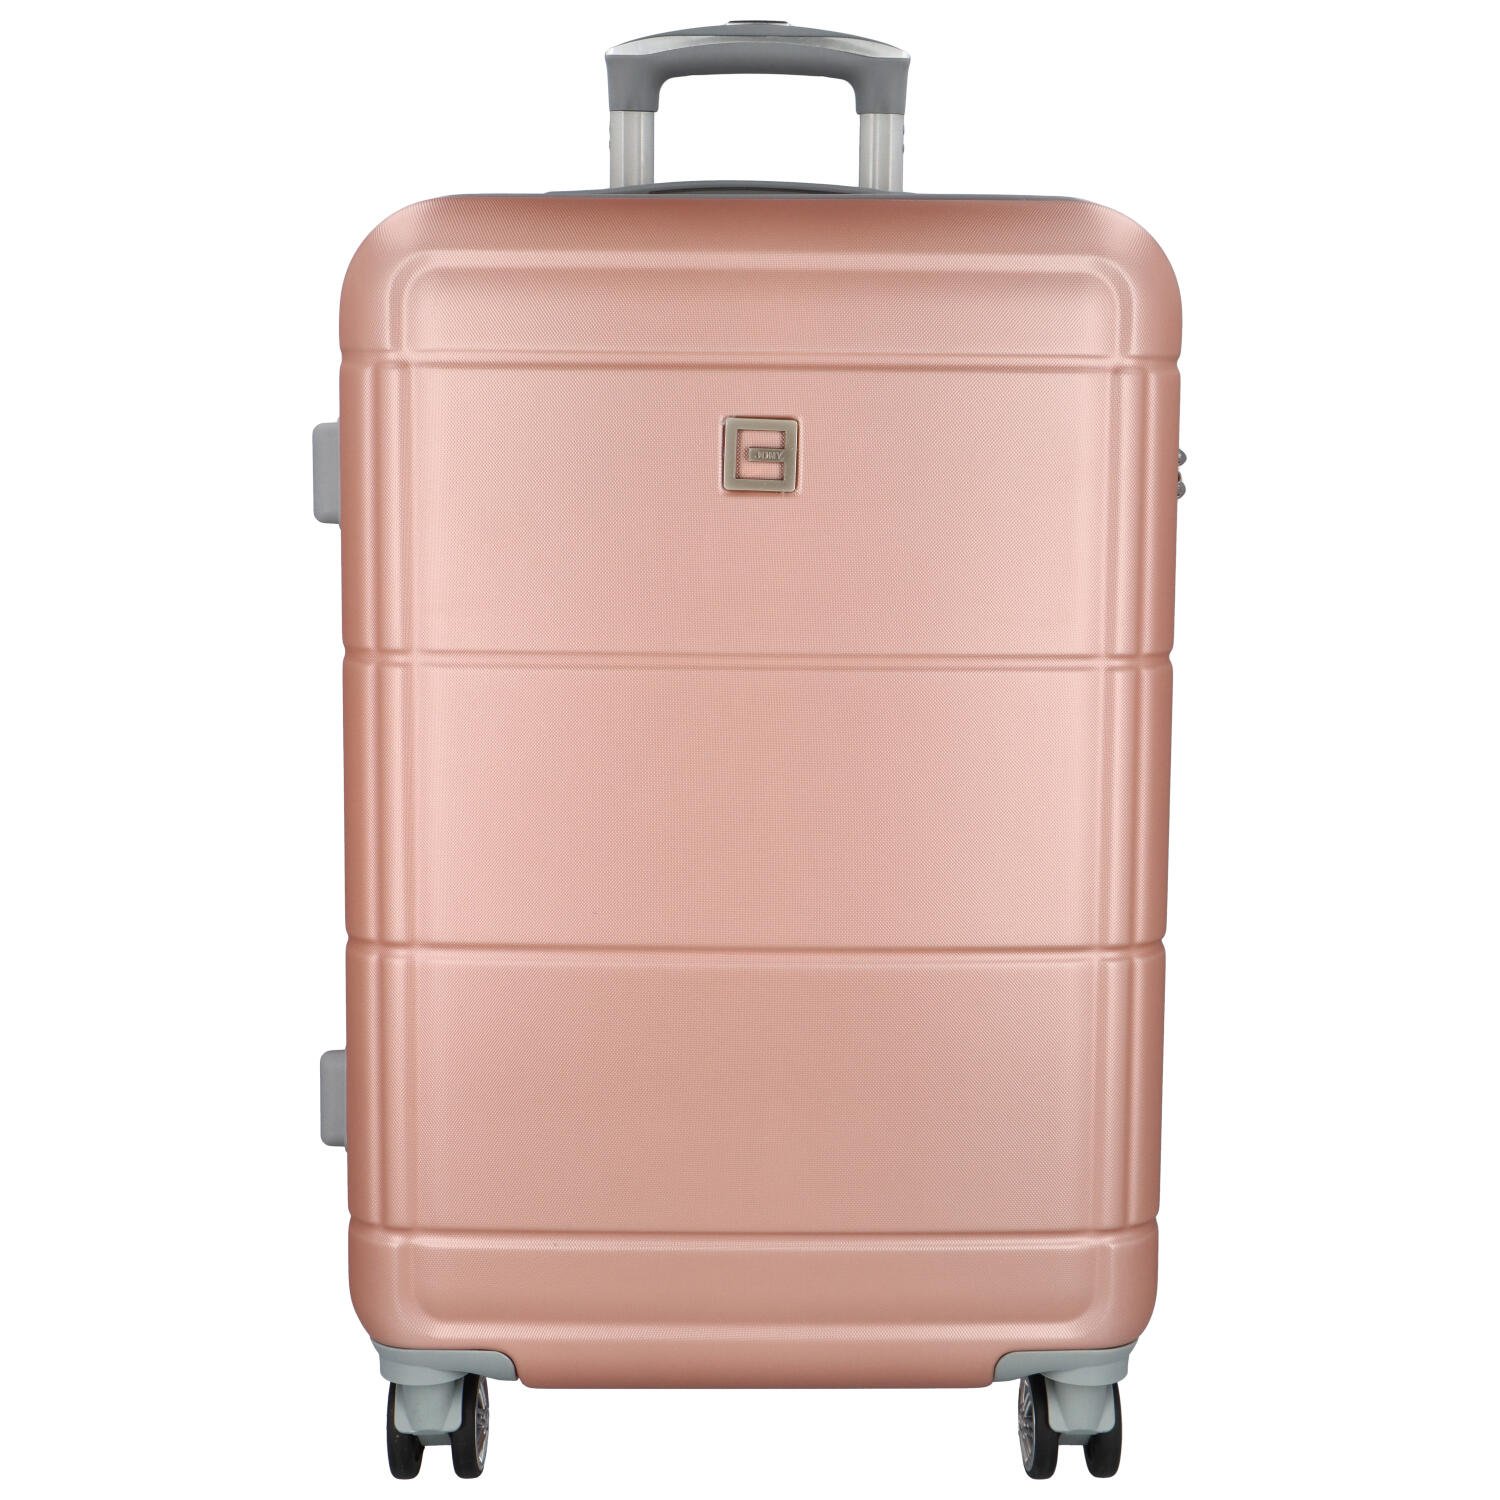 Cestovní plastový kufr Gothard velikost M, růžovo-zlatý